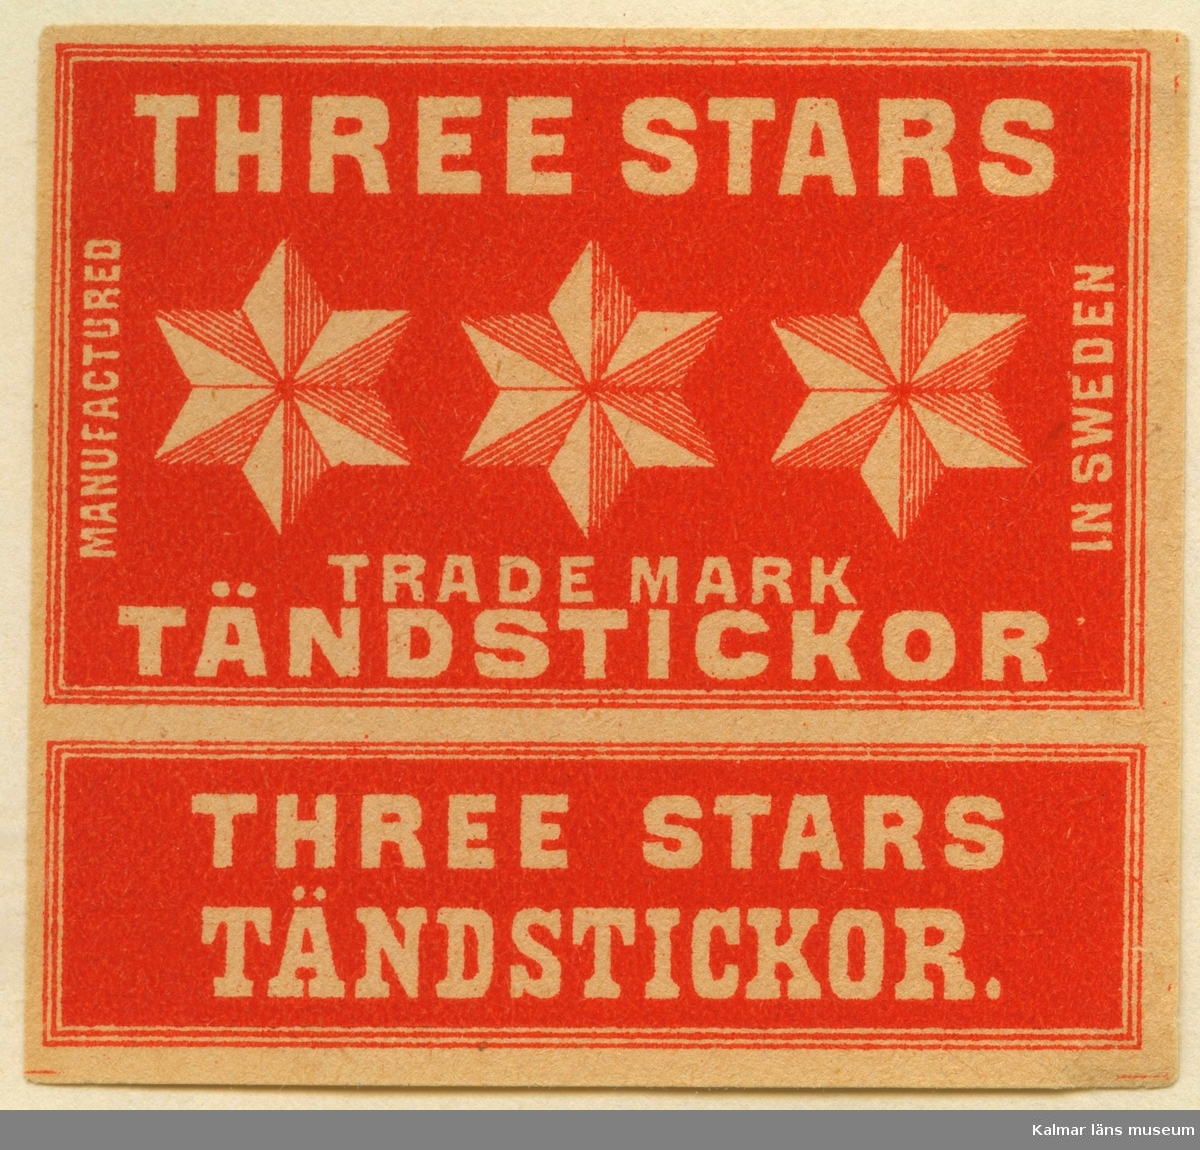 Tändsticksetikett från Mönsterås Tändsticksfabrik, "Three Stars Trade Mark Tändstickor"


Mönsterås har haft två tändsticksfabriker. Den första var Rosendahlsfabriken som anlades 1869 av apotekare Götvid Frykman (1811-1876). Frykman bodde i Kalmar och innehade apoteket i Borgholm 1842-1864. Fabriken lades ner 1887 men 1892 anlades en ny fabrik av Ernst Kreuger och hans bror Fredrik i London under firma E & F Kreuger i Kalmar. Detta skulle bli inledningen till Kreugerepoken inom den svenska tändsticksindustrin..

Under 1800-talet  tillverkades vid fabrikerna i huvudsak svaveltändstickor för export. Genom att också fosfor ingick i tändsatsen var de lättantändliga och orsakade ofta små bränder inom fabriken. Stickornas isättning i ramar gjordes för hand och var hälsovådlig för arbetarna, varför de måste passera vakten till tvättrummet som såg till att alla tvättade händerna före måltid och vid arbetets slut. Fosforångorna var också mycket skadliga särkilt för personer med dåliga tänder.
Frykman som ägde Rosendahlsfabriken, sålde den till A M Lindqvist från Mönsterås. Lindqvist utökade rörelsen avsevärt, men tillverkningen omfattade bara fosfortändstickor. Mönsterås Tidning skriver i en artikel 1882 att fabriken hade 120 anställda och att priserna låg under Jönköpings. Efter konkursen 1887 lades fabriken ner.

(Uppgifterna hämtade från http://thoresmatches.se/tandsticksfabriker/monsteras_tandsticksfabriker.htm)